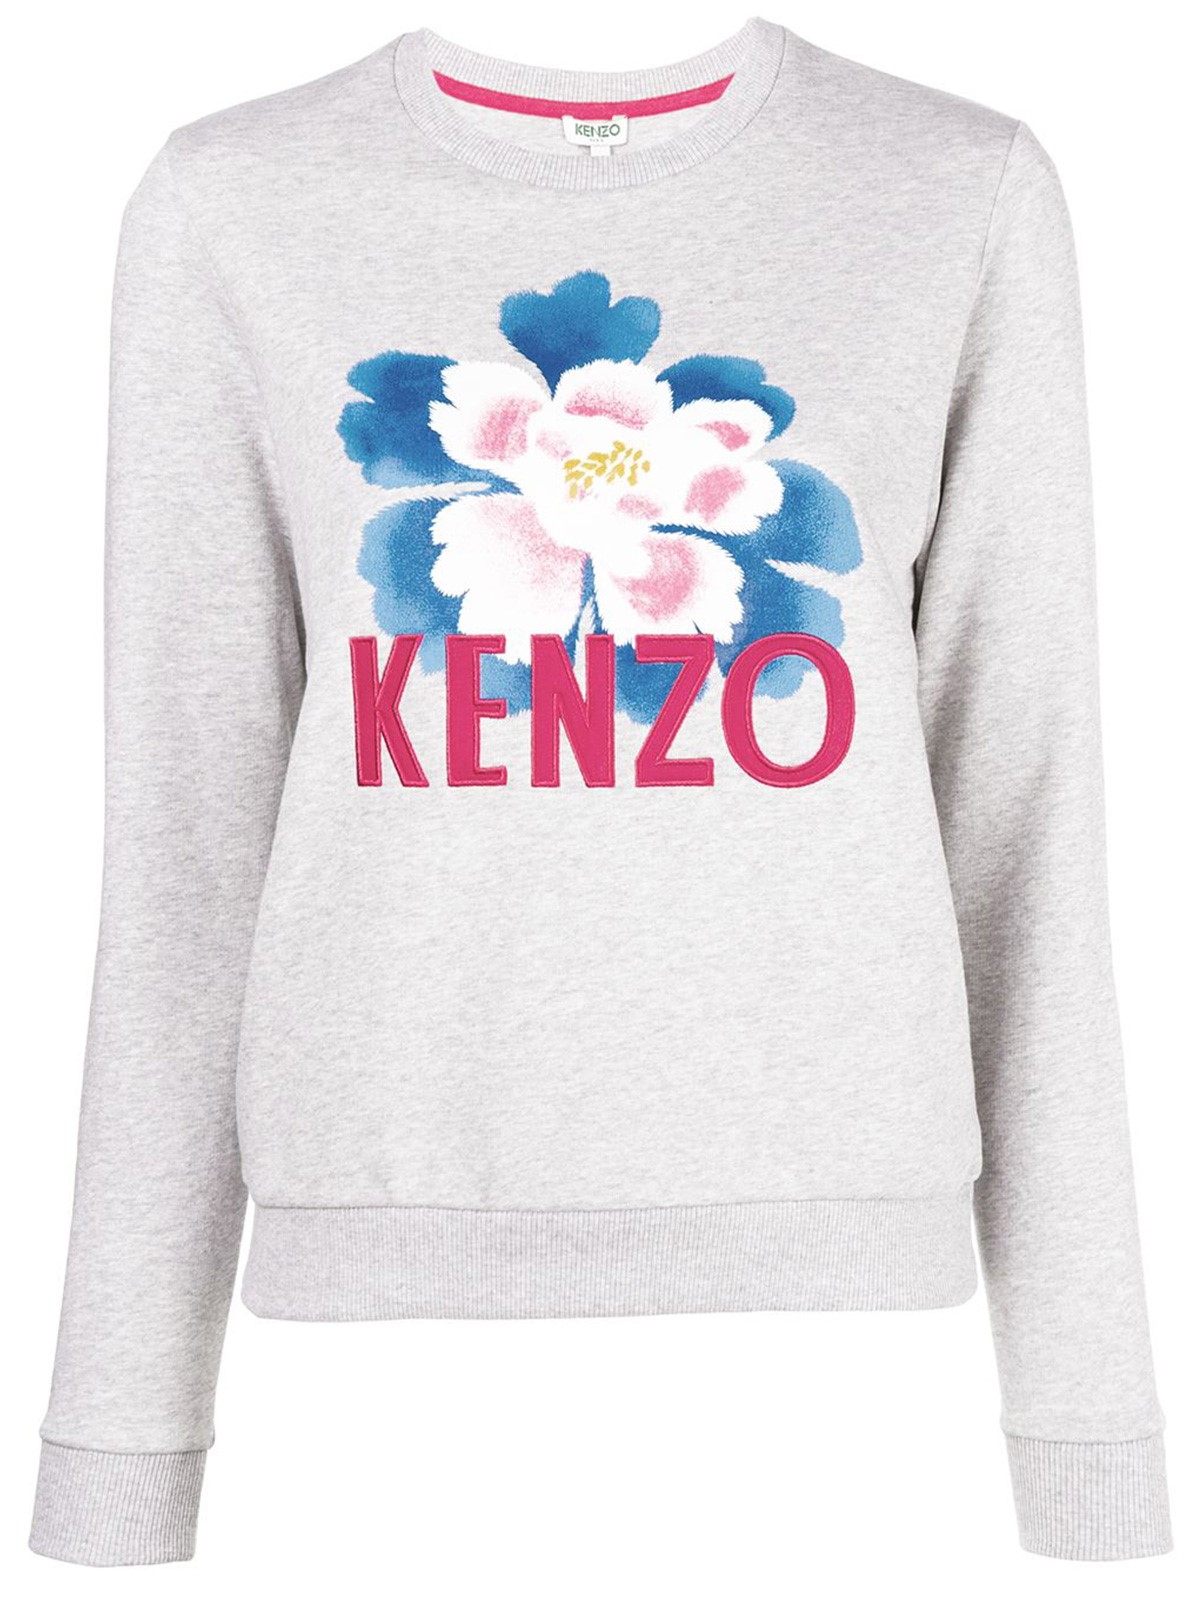 kenzo flower sweater